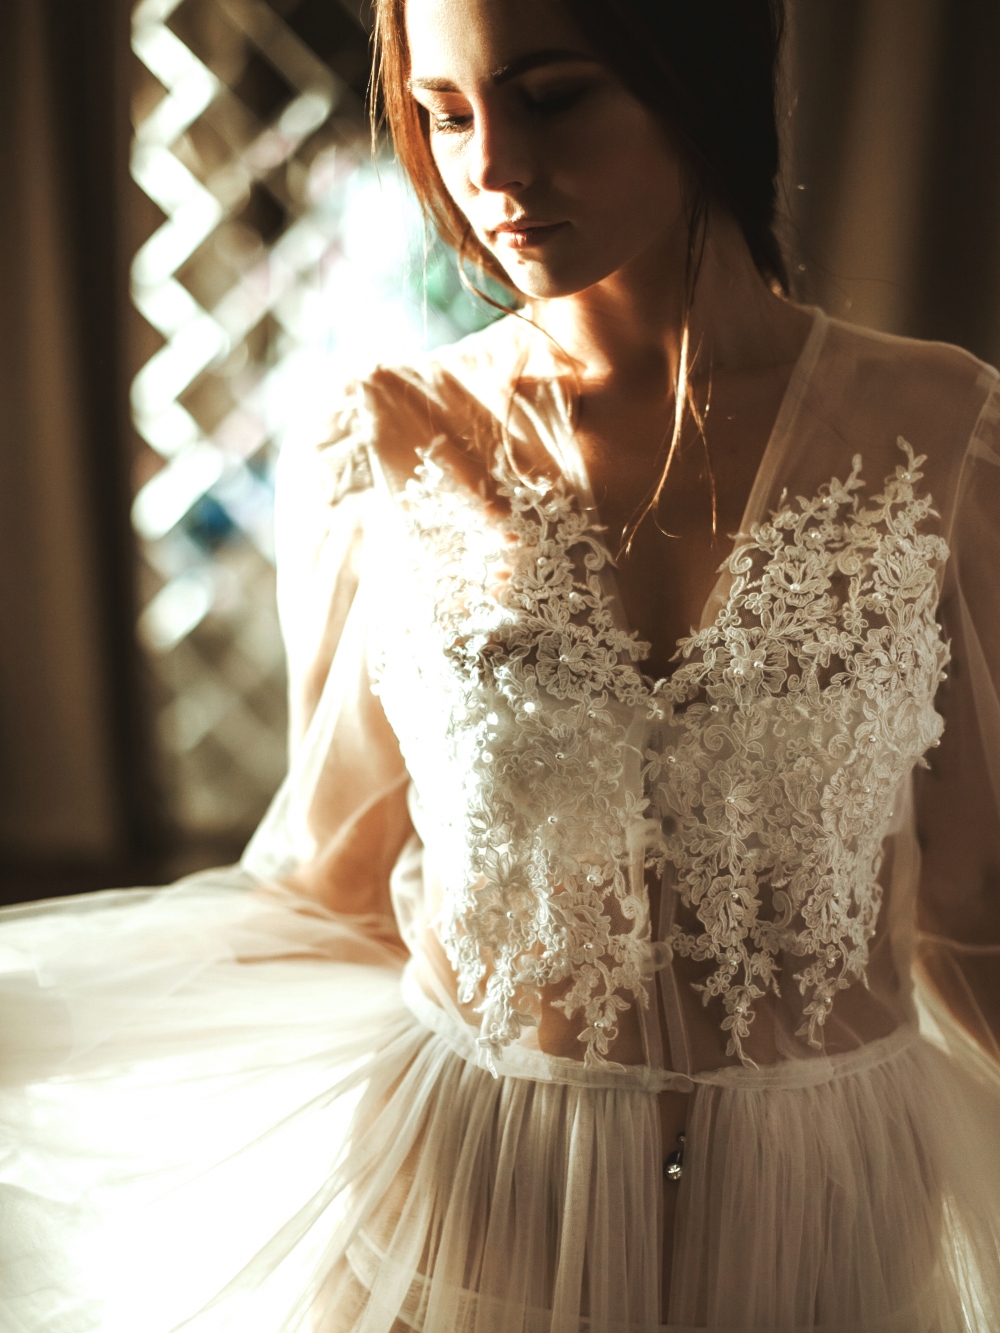 Будуарное платье "Ариэль". Воздушное белоснежное платье, особенности которого двойная фатиновая юбка и расклешенные рукава